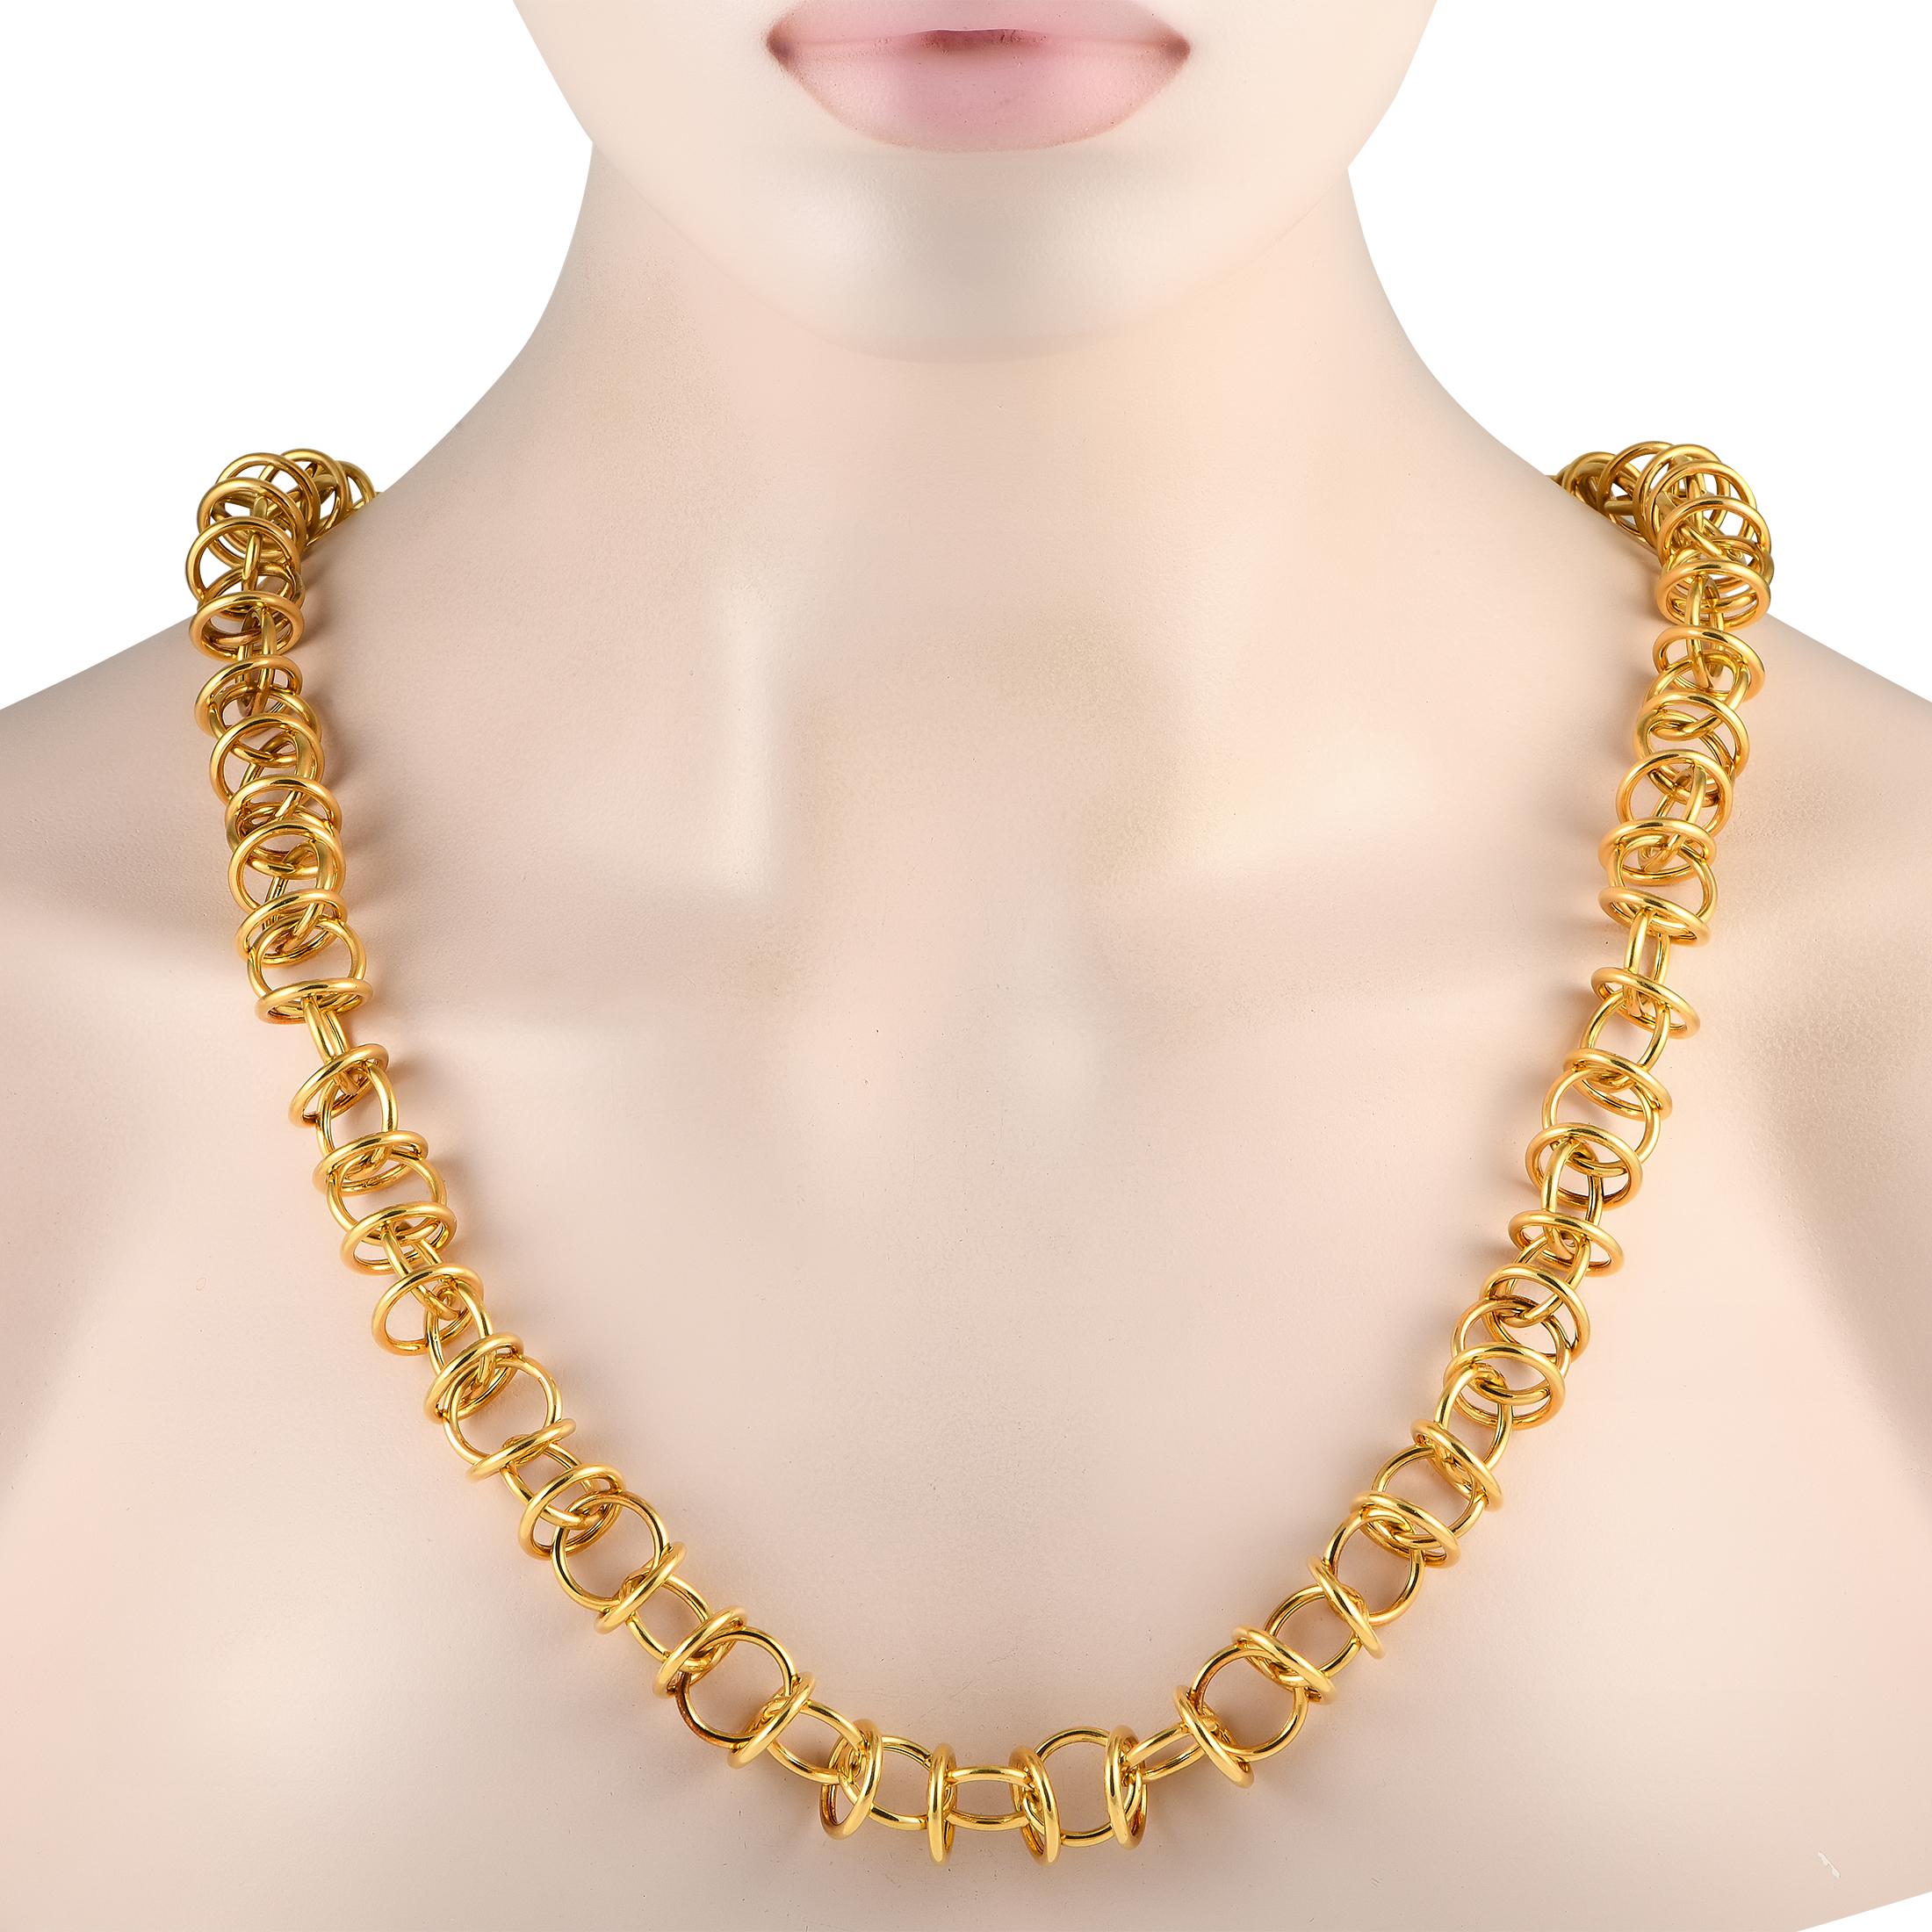 Une série de maillons circulaires en or jaune 18 carats rend ce collier Tiffany & Co. impossible à ignorer. Cet accessoire de fabrication impeccable mesure 30 cm de long. Ce bijou est offert dans un état de succession et comprend une pochette cadeau.